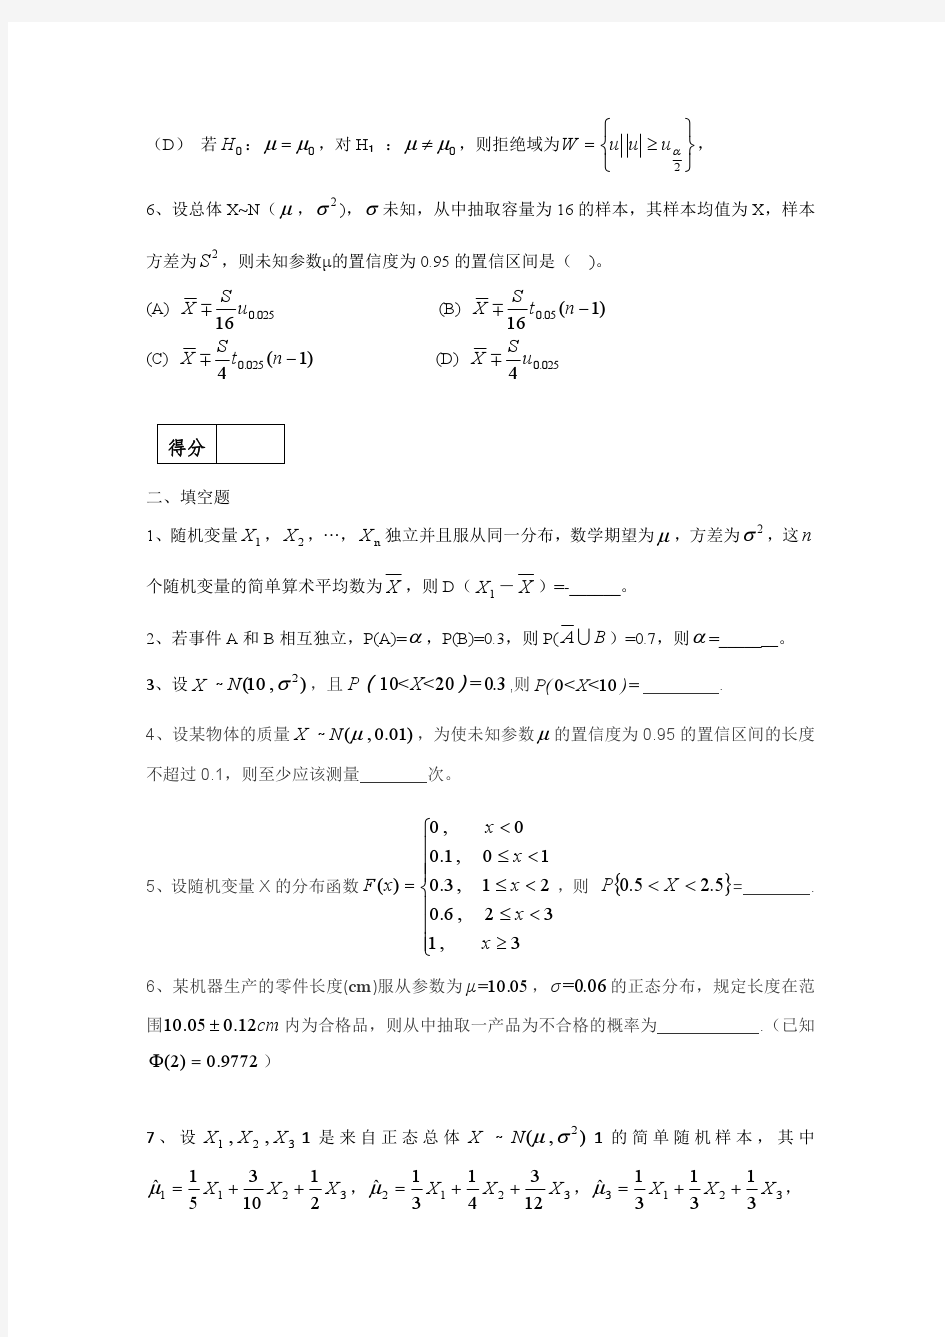 2015-2016华南农业大学概率论与数理统计期末考试试卷(1)